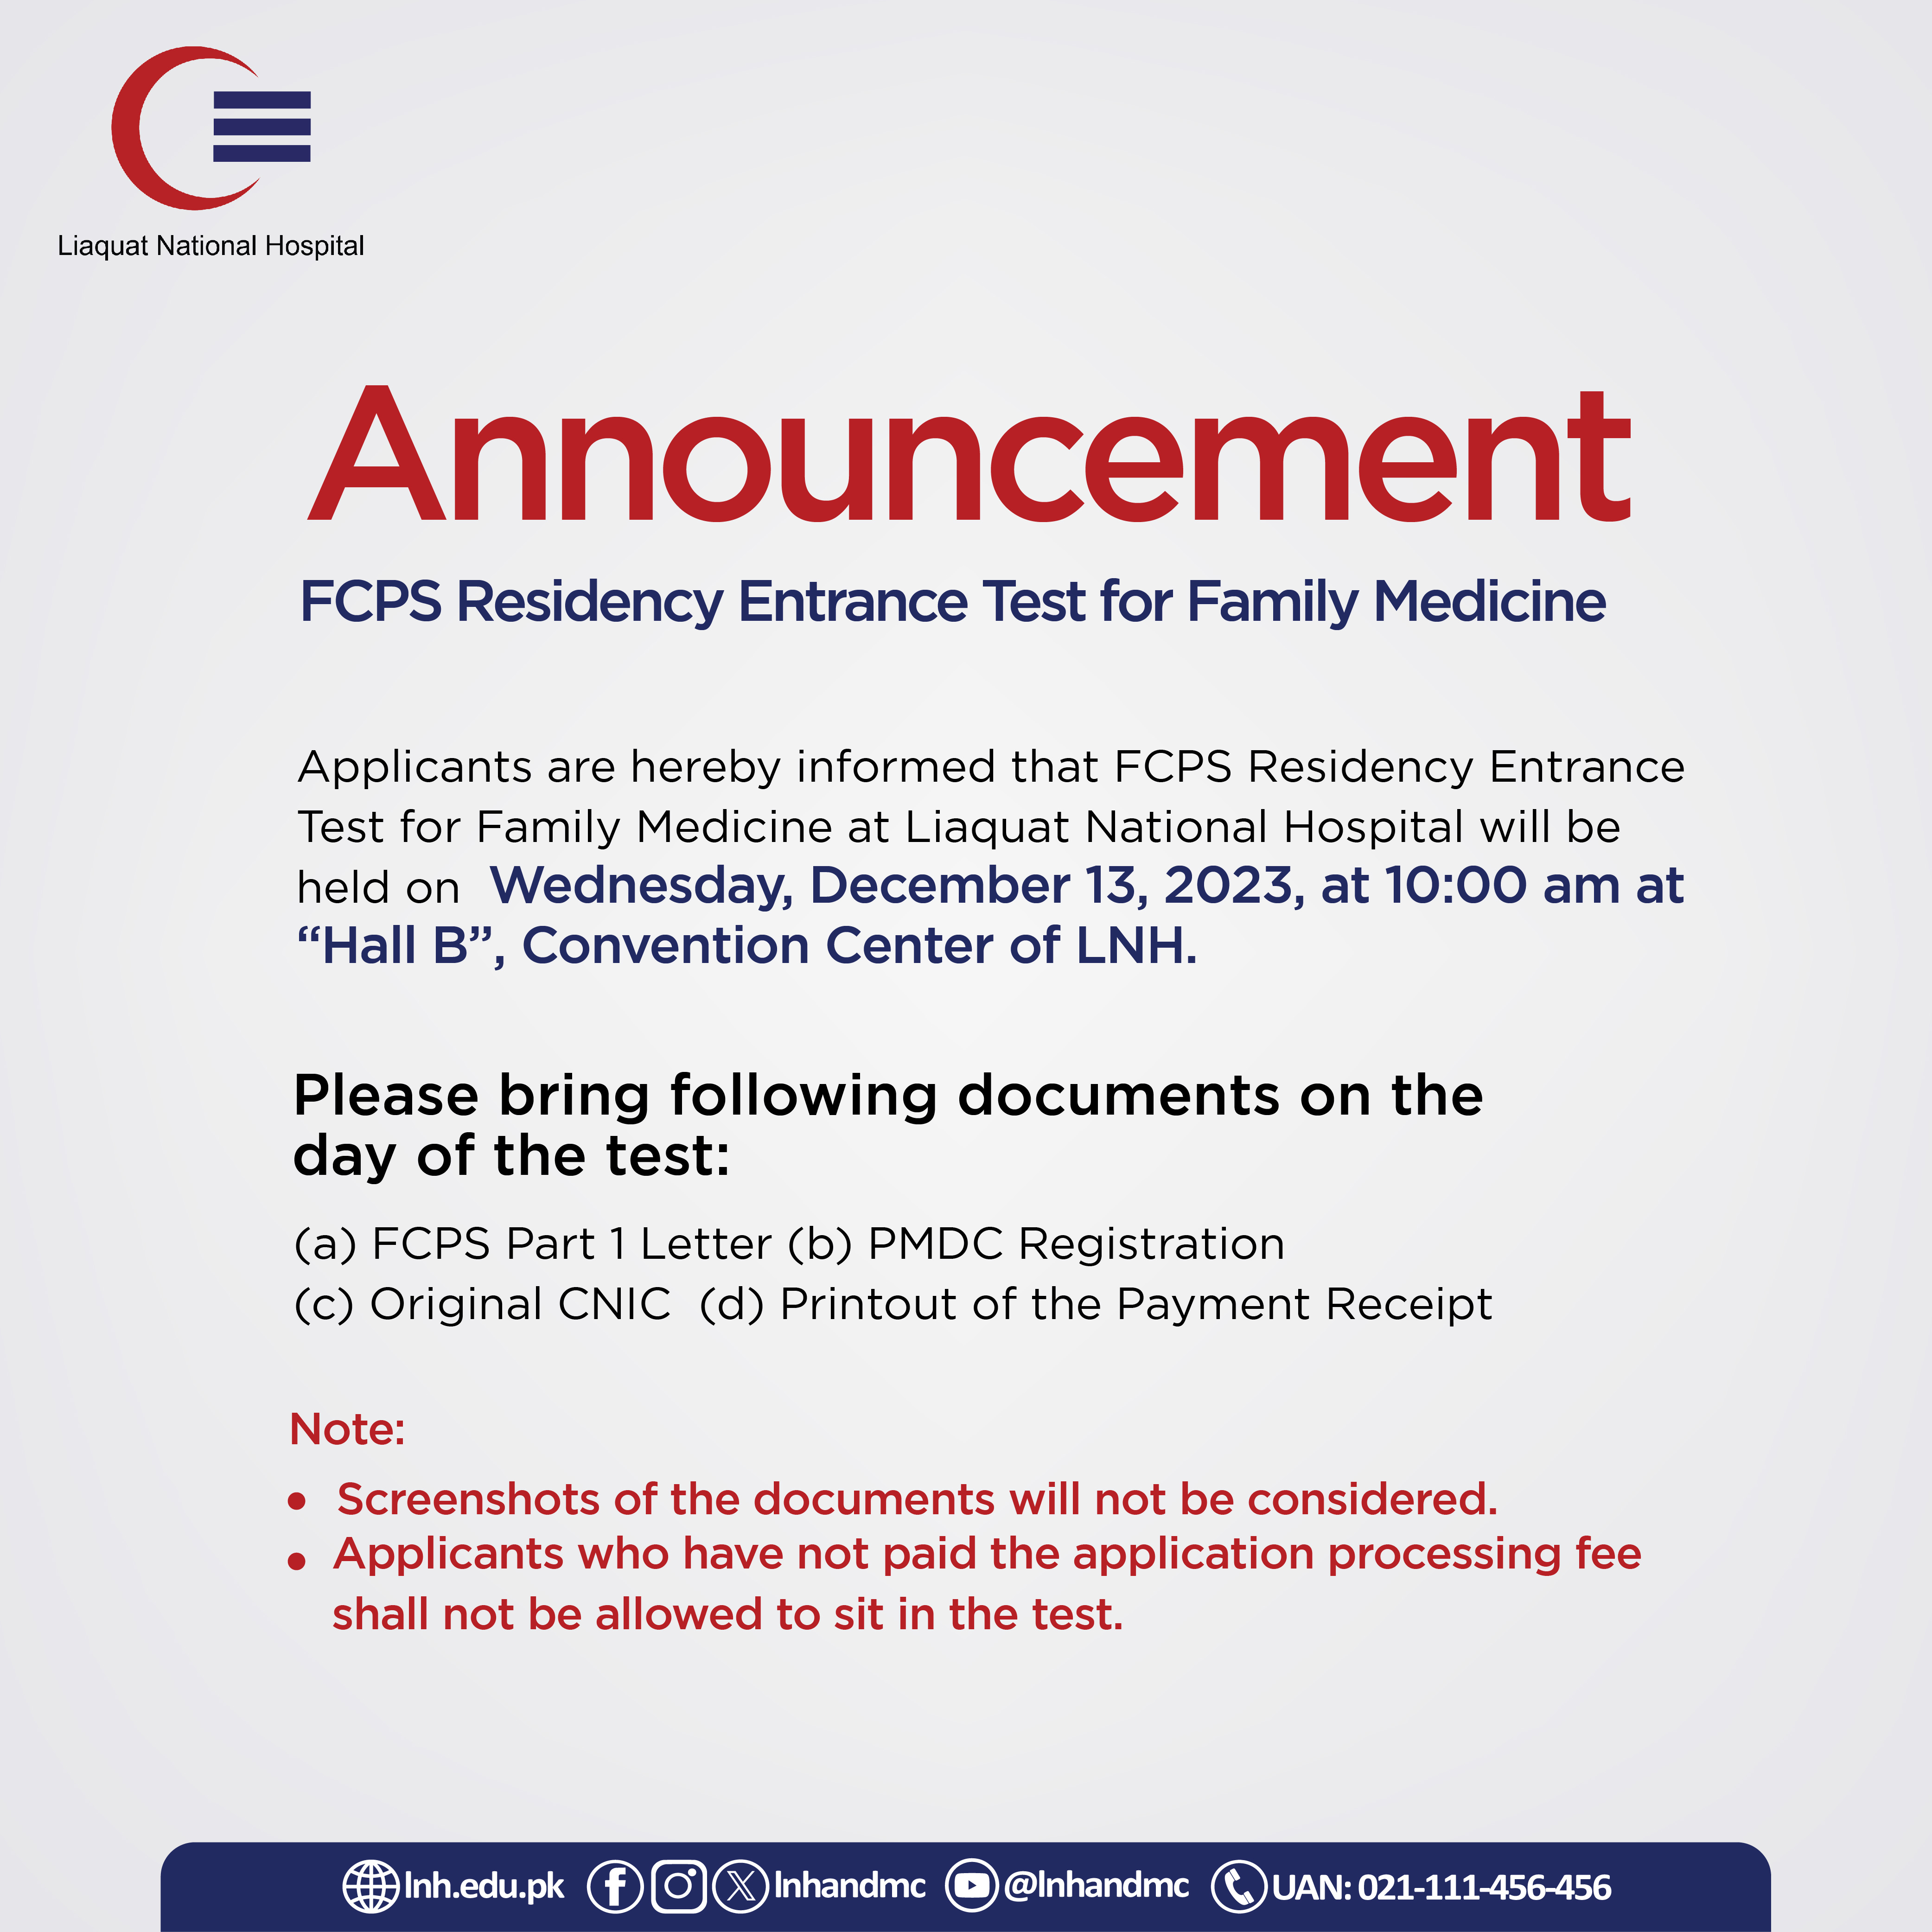 FCPS Residency Entrance Test for Family Medicine